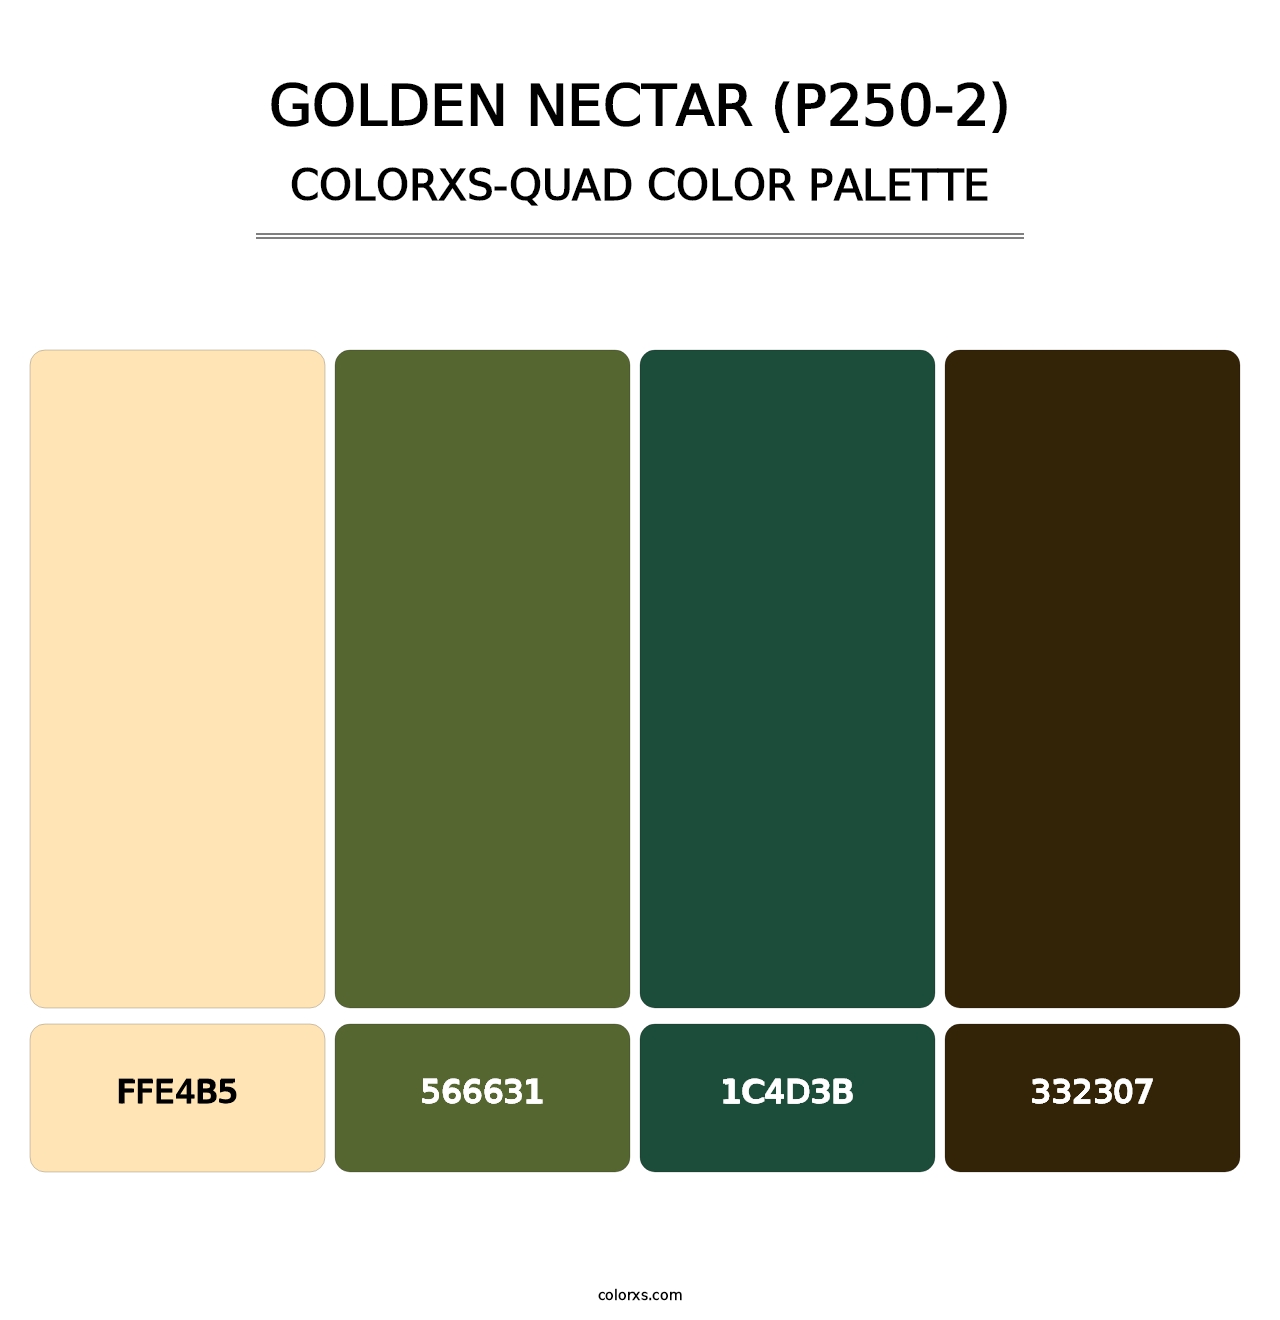 Golden Nectar (P250-2) - Colorxs Quad Palette